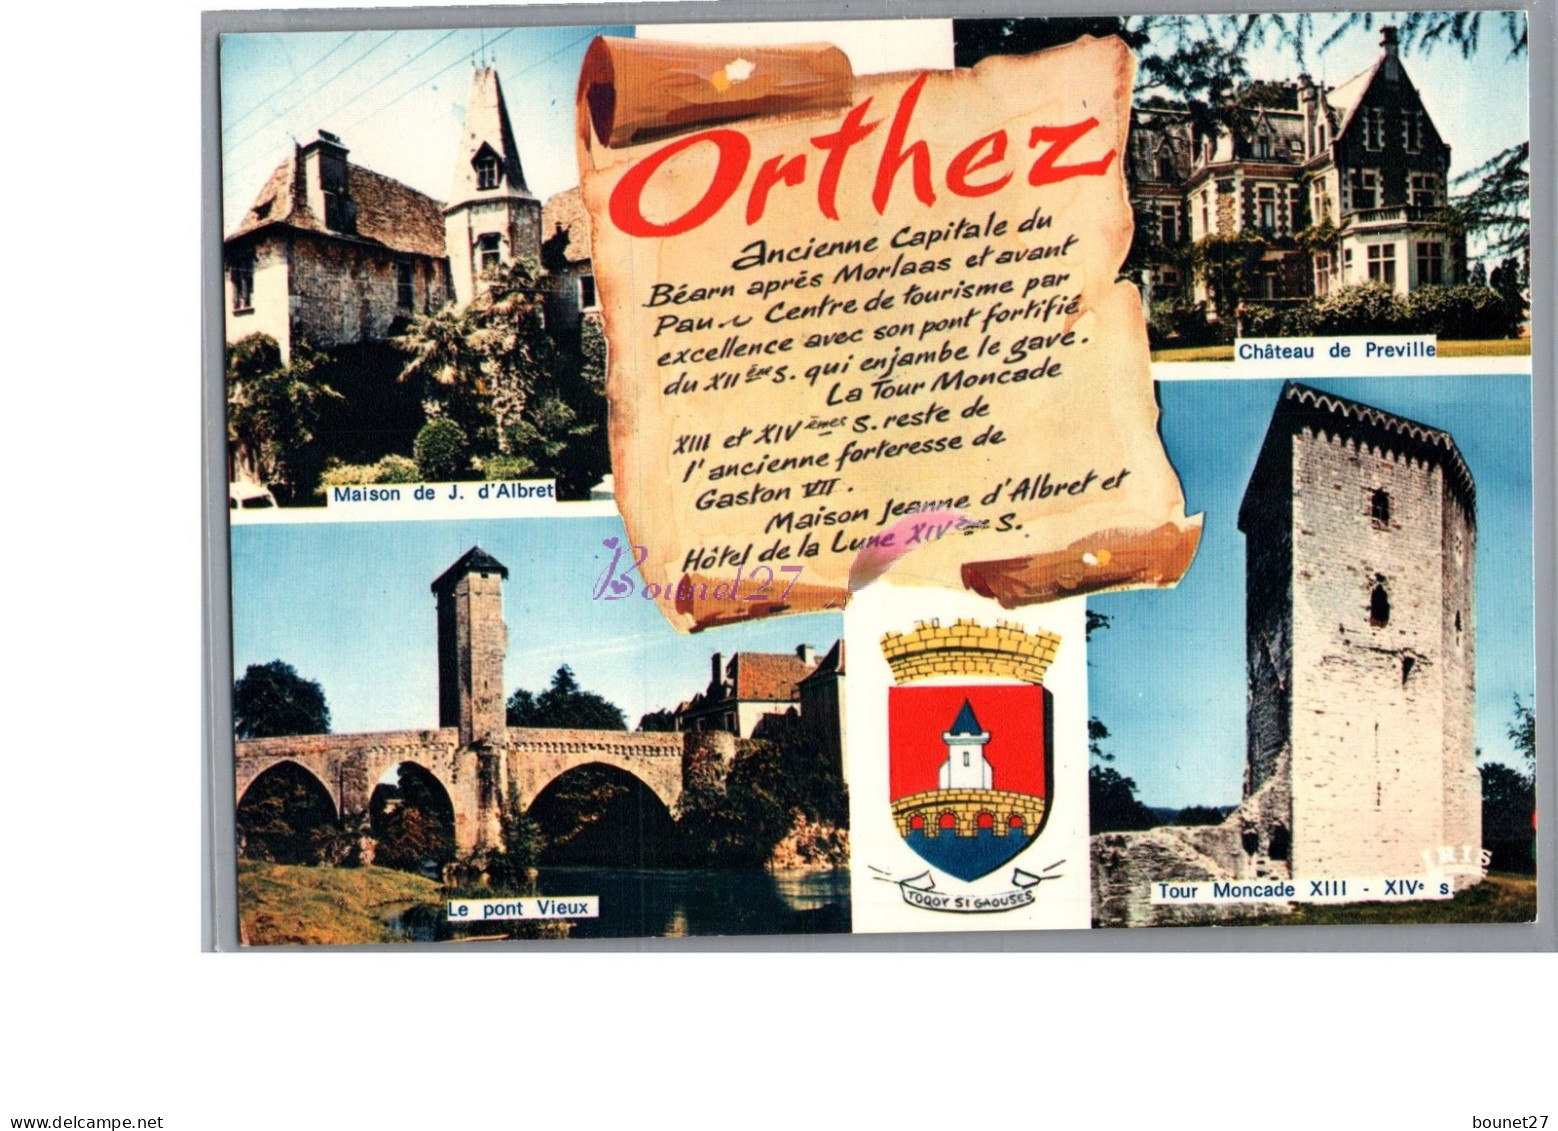 ORTHEZ 64 - Le Pont Vieux Maison De J D'albret Chateau Preville Tour Moncade Parchemin Histoire De La Ville - Orthez